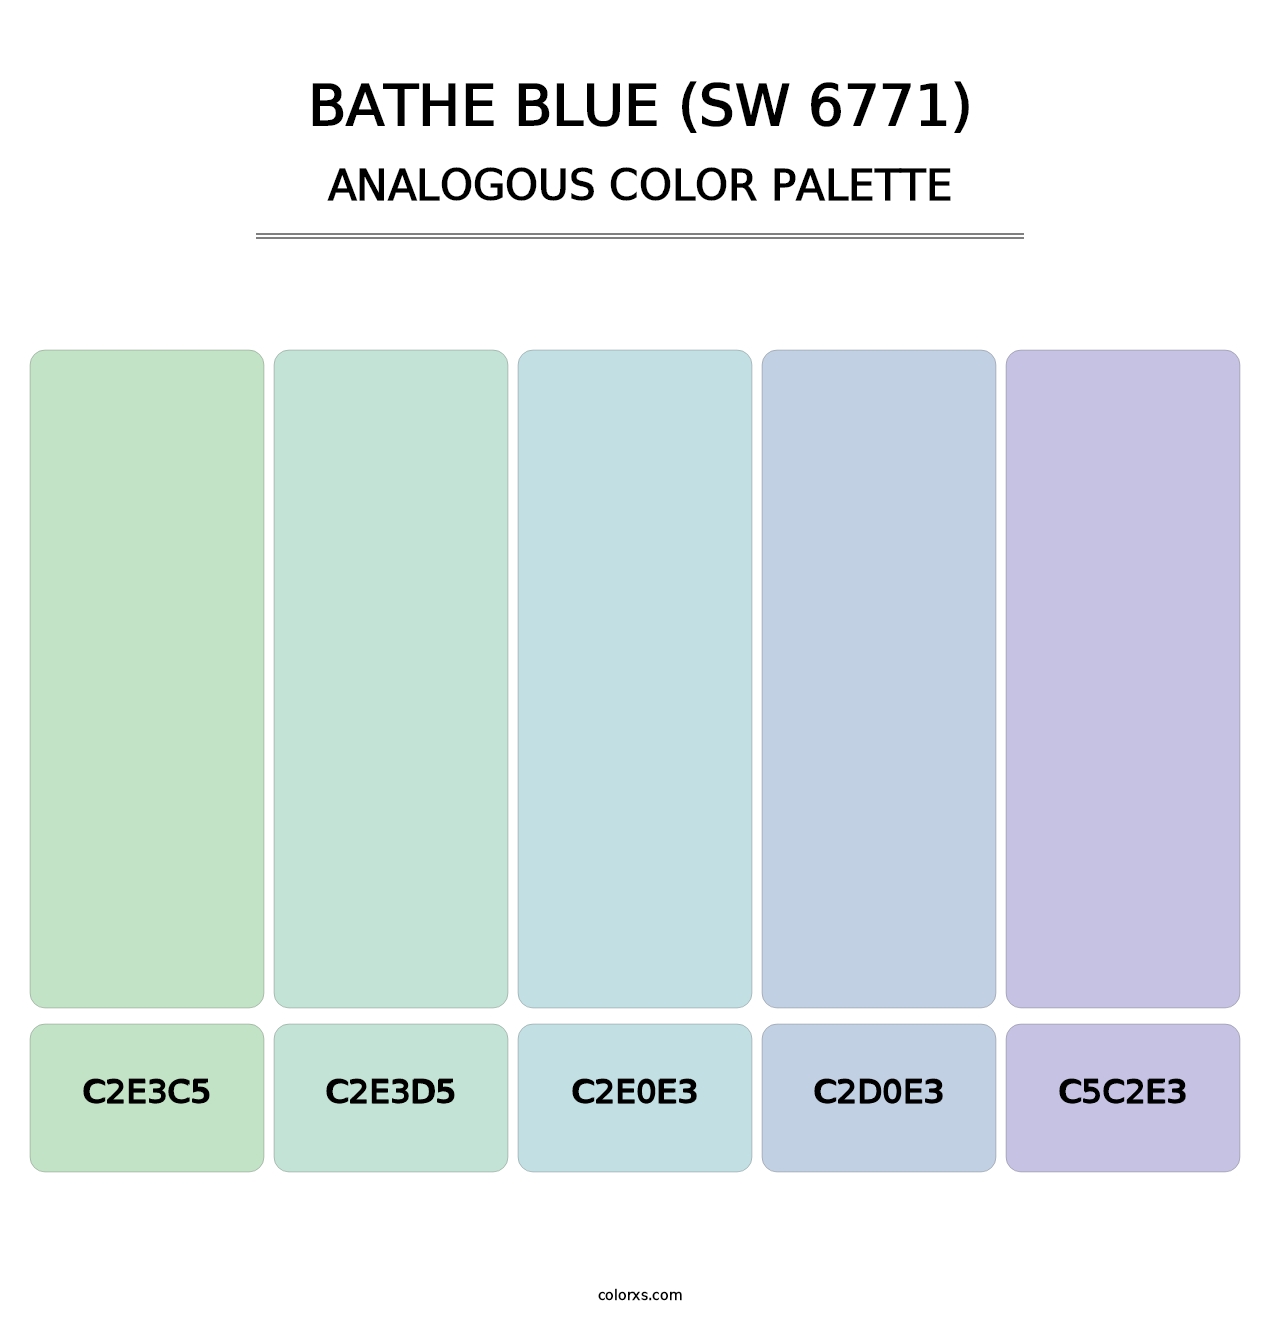 Bathe Blue (SW 6771) - Analogous Color Palette